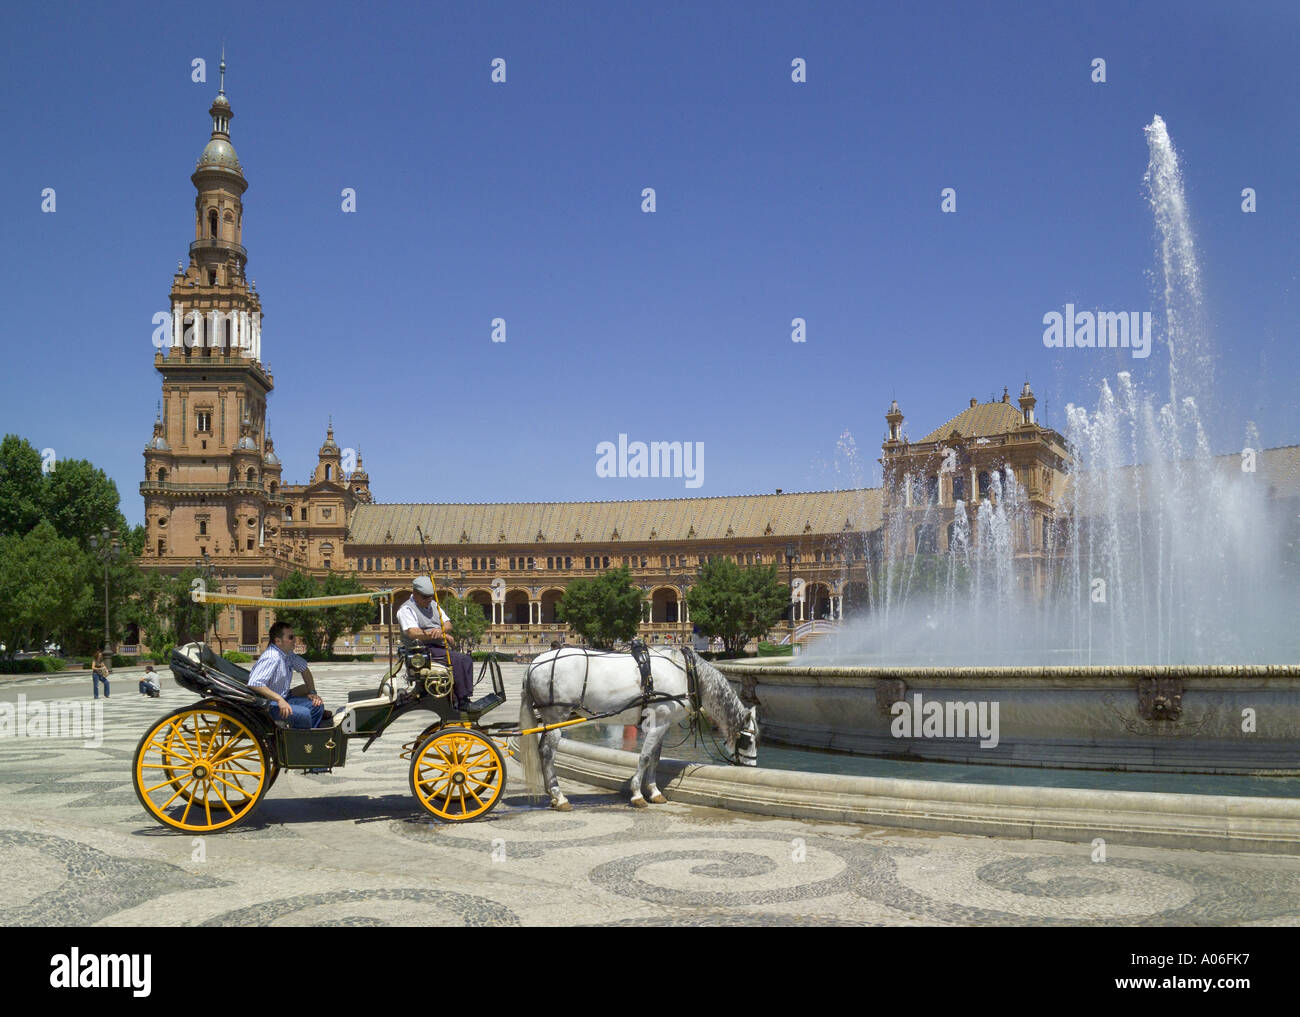 Spanien, Sevilla, Plaza de Espana, Pferd und Wagen, mit Touristen Kreisen des Brunnens Stockfoto